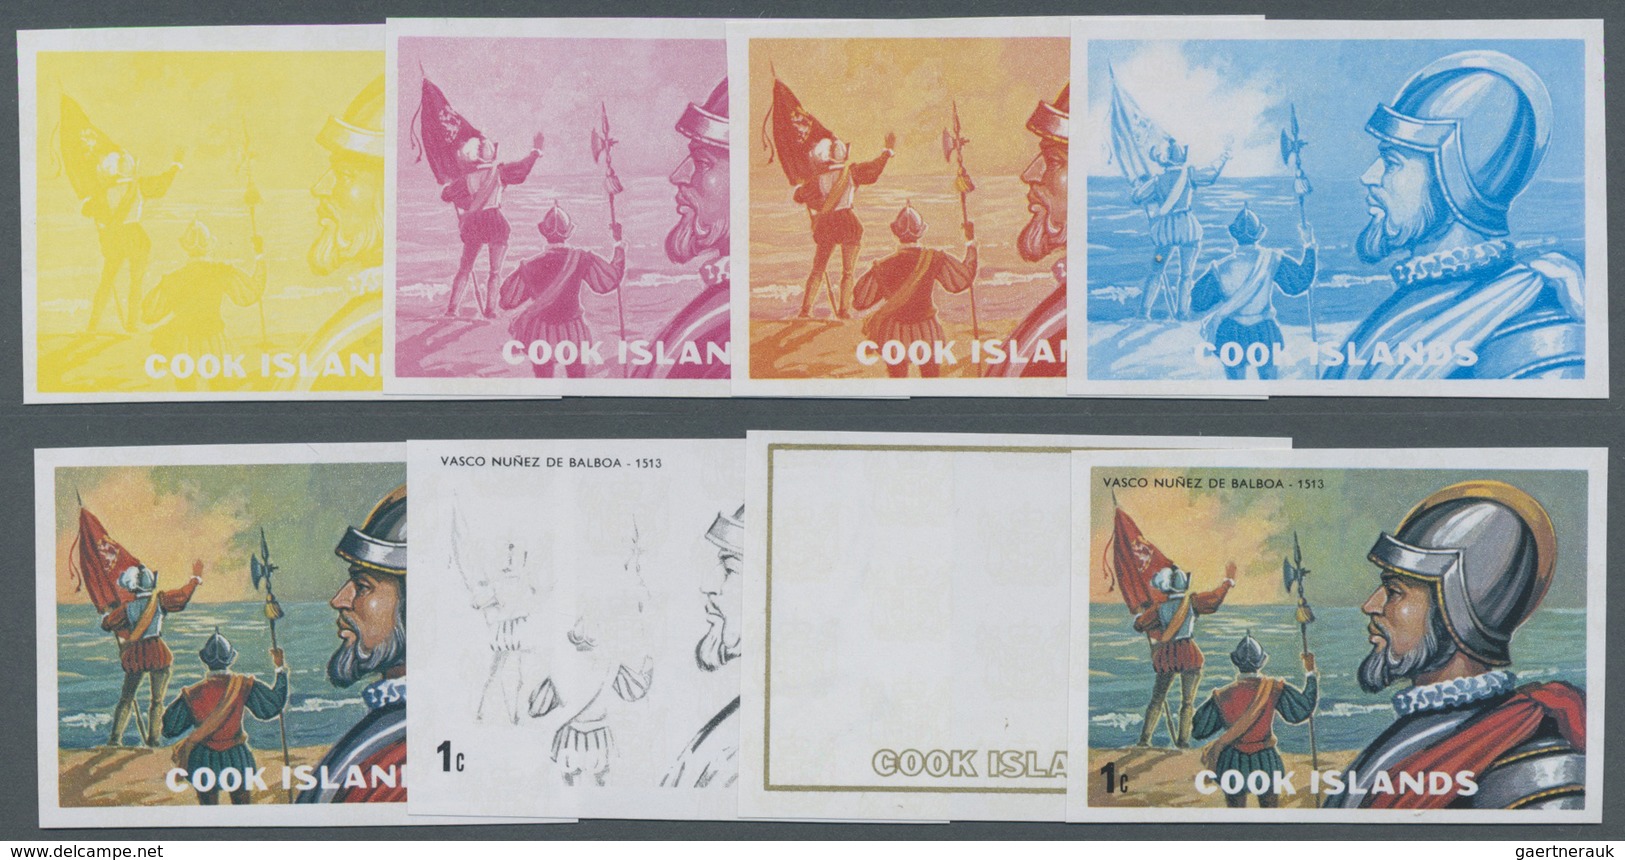 ** Cook-Inseln: 1966 - 1990, riesige Sammlung von PHASENDRUCKEN der Ausgaben der Cook Inseln aus Mi. 12